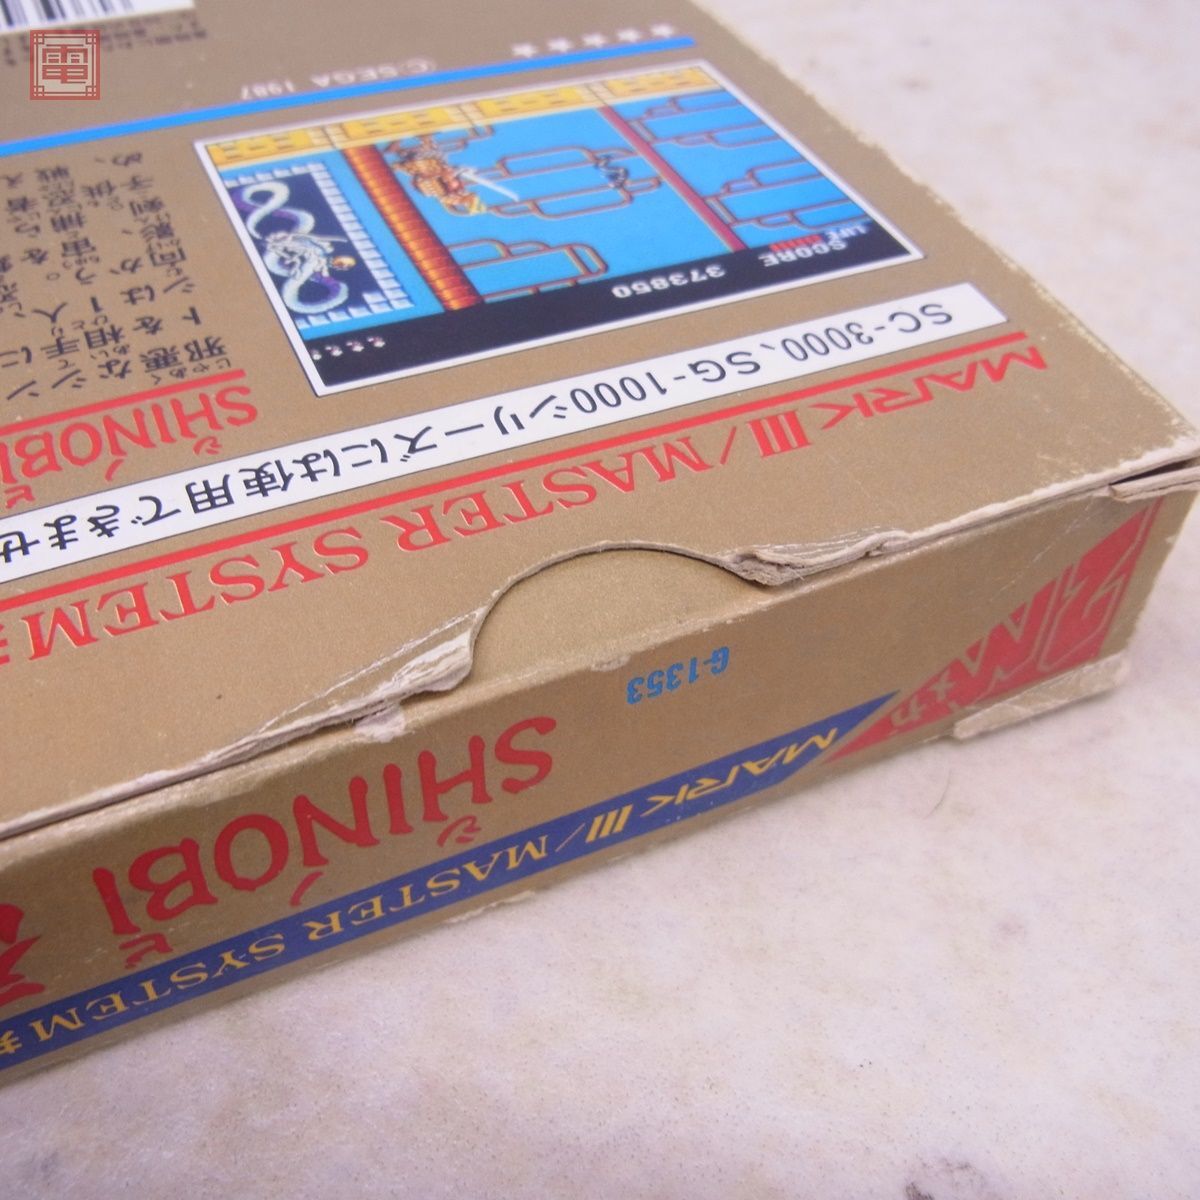  operation guarantee goods Mark III SHINOBI. shino biSEGA Sega box opinion attaching [10